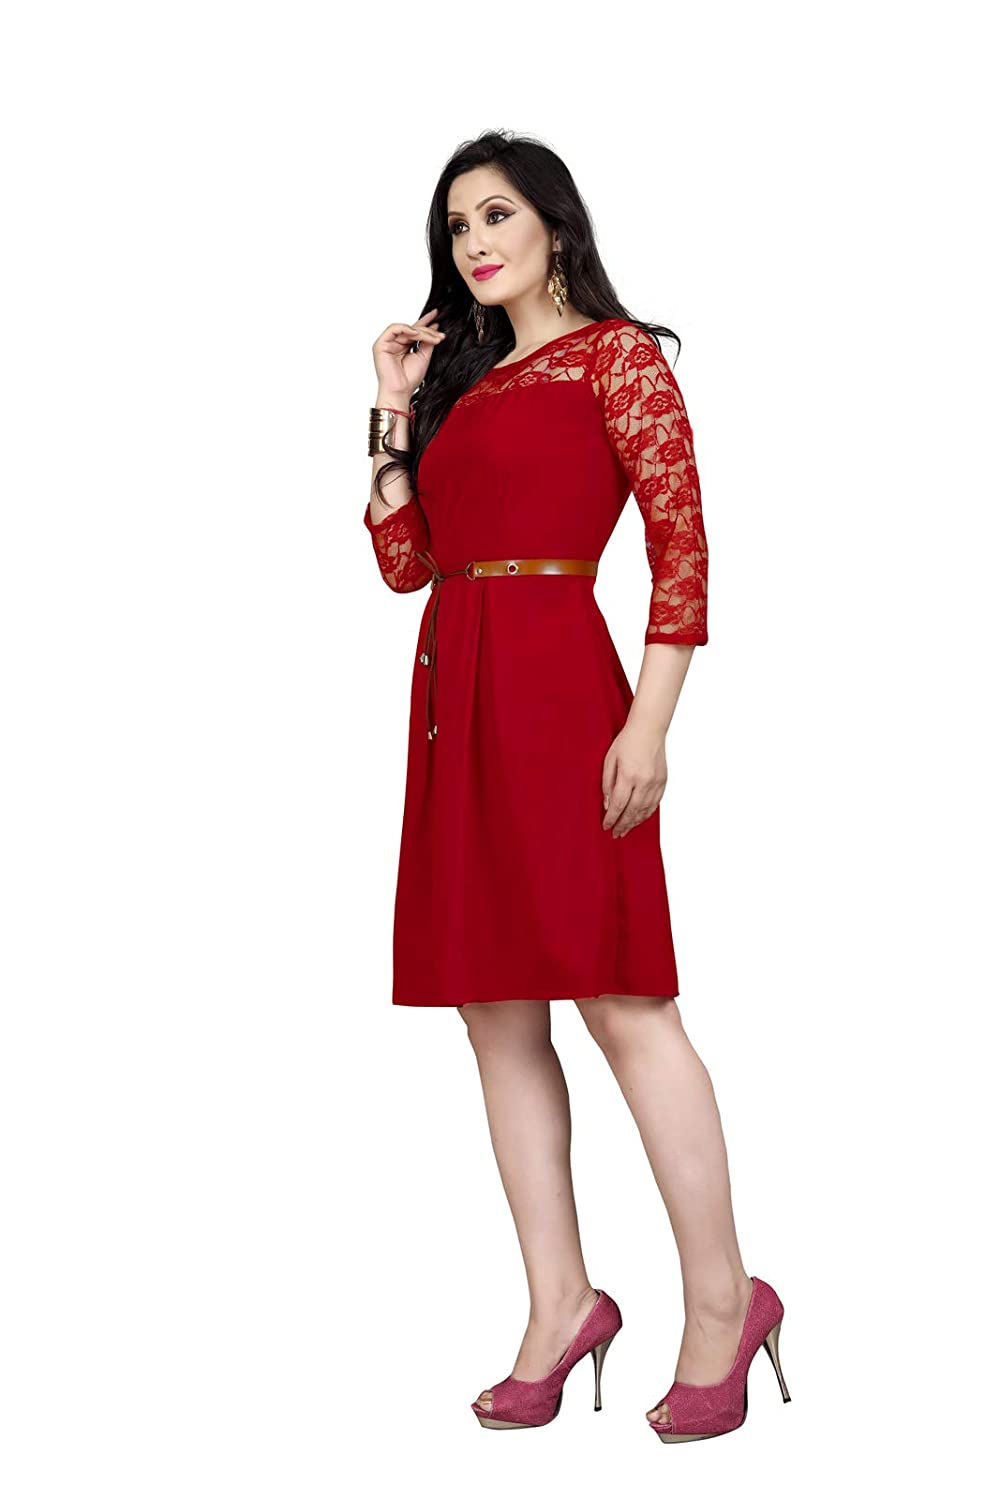 Shruhad® Women’s Knee Length Dress -  Dresses in Sri Lanka from Arcade Online Shopping - Just Rs. 4999!